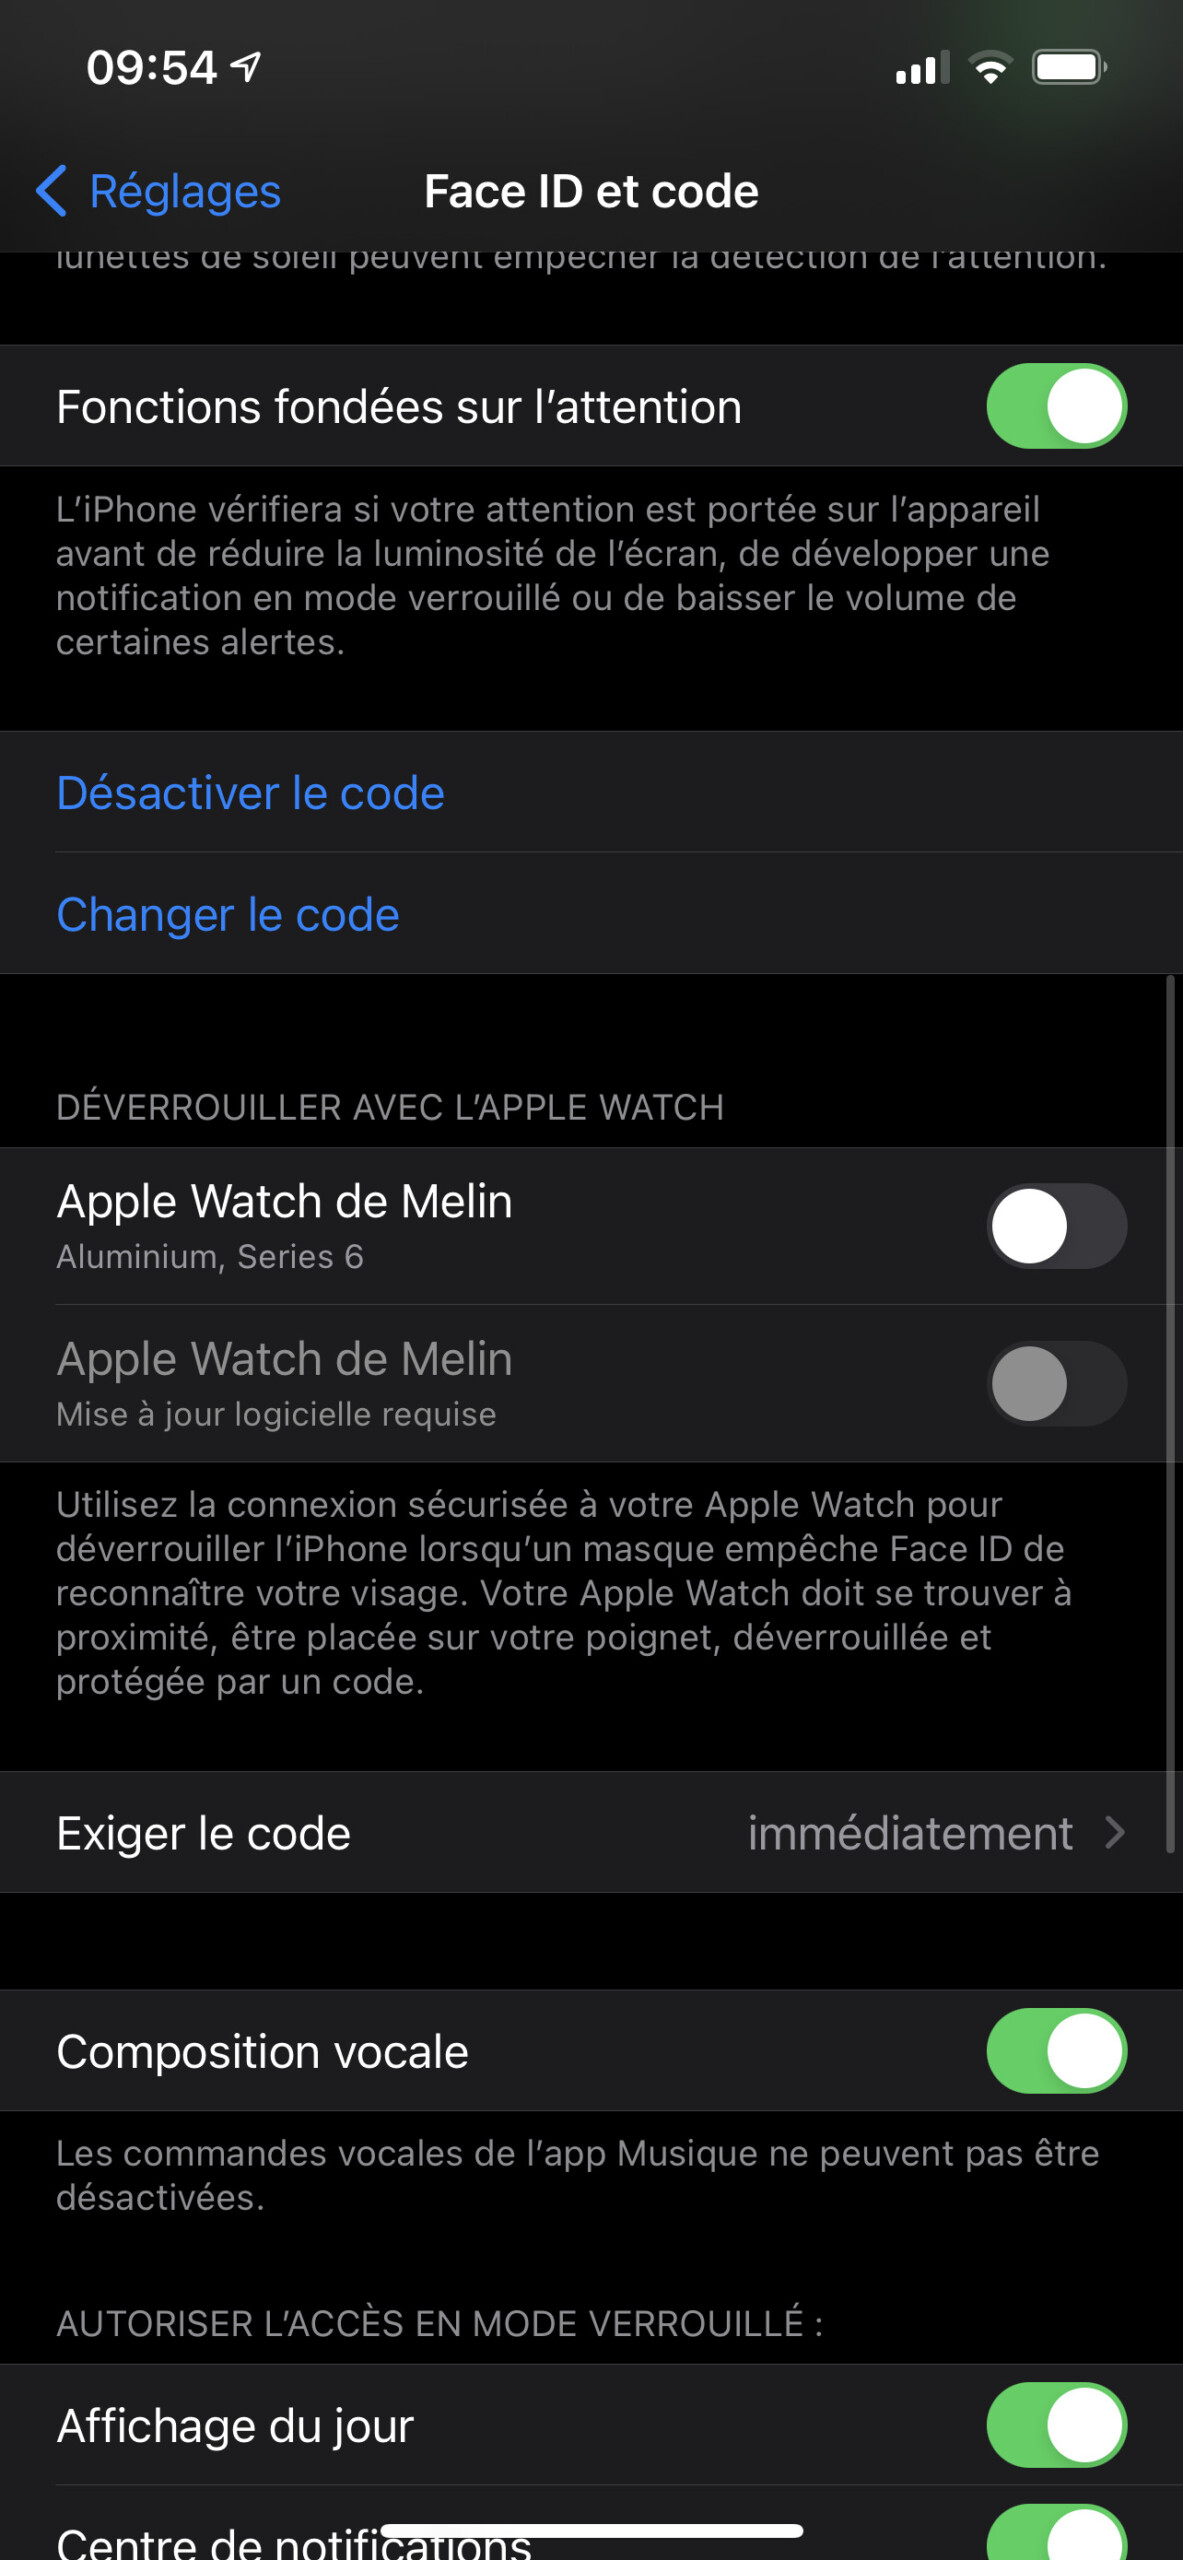 Activez le déverrouillage par l'Apple Watch